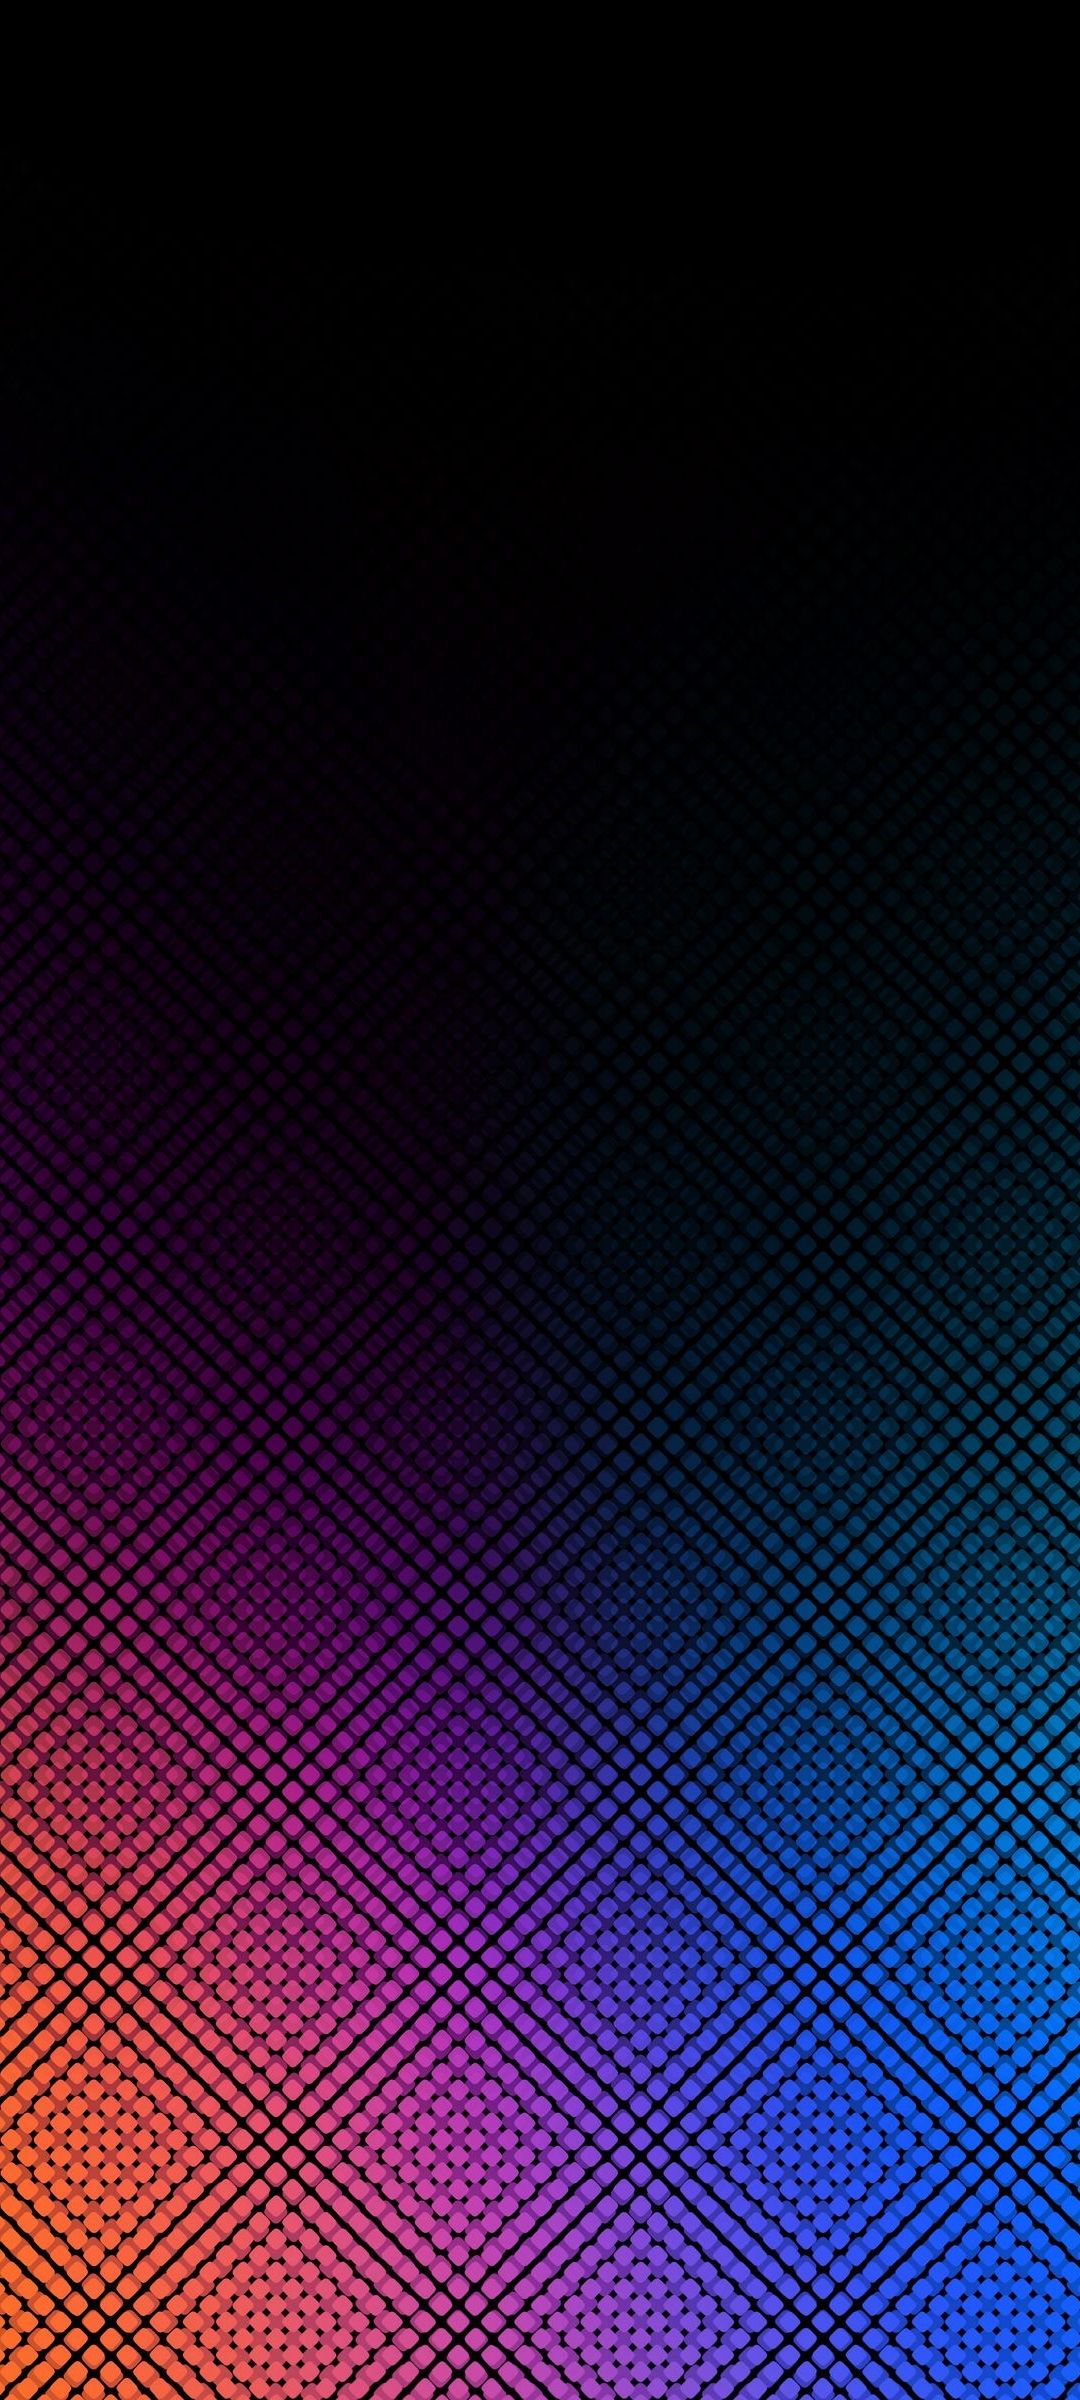 青 ピンク 黒の小さな菱形の集合体 Redmi Note 9s Androidスマホ壁紙 待ち受け スマラン